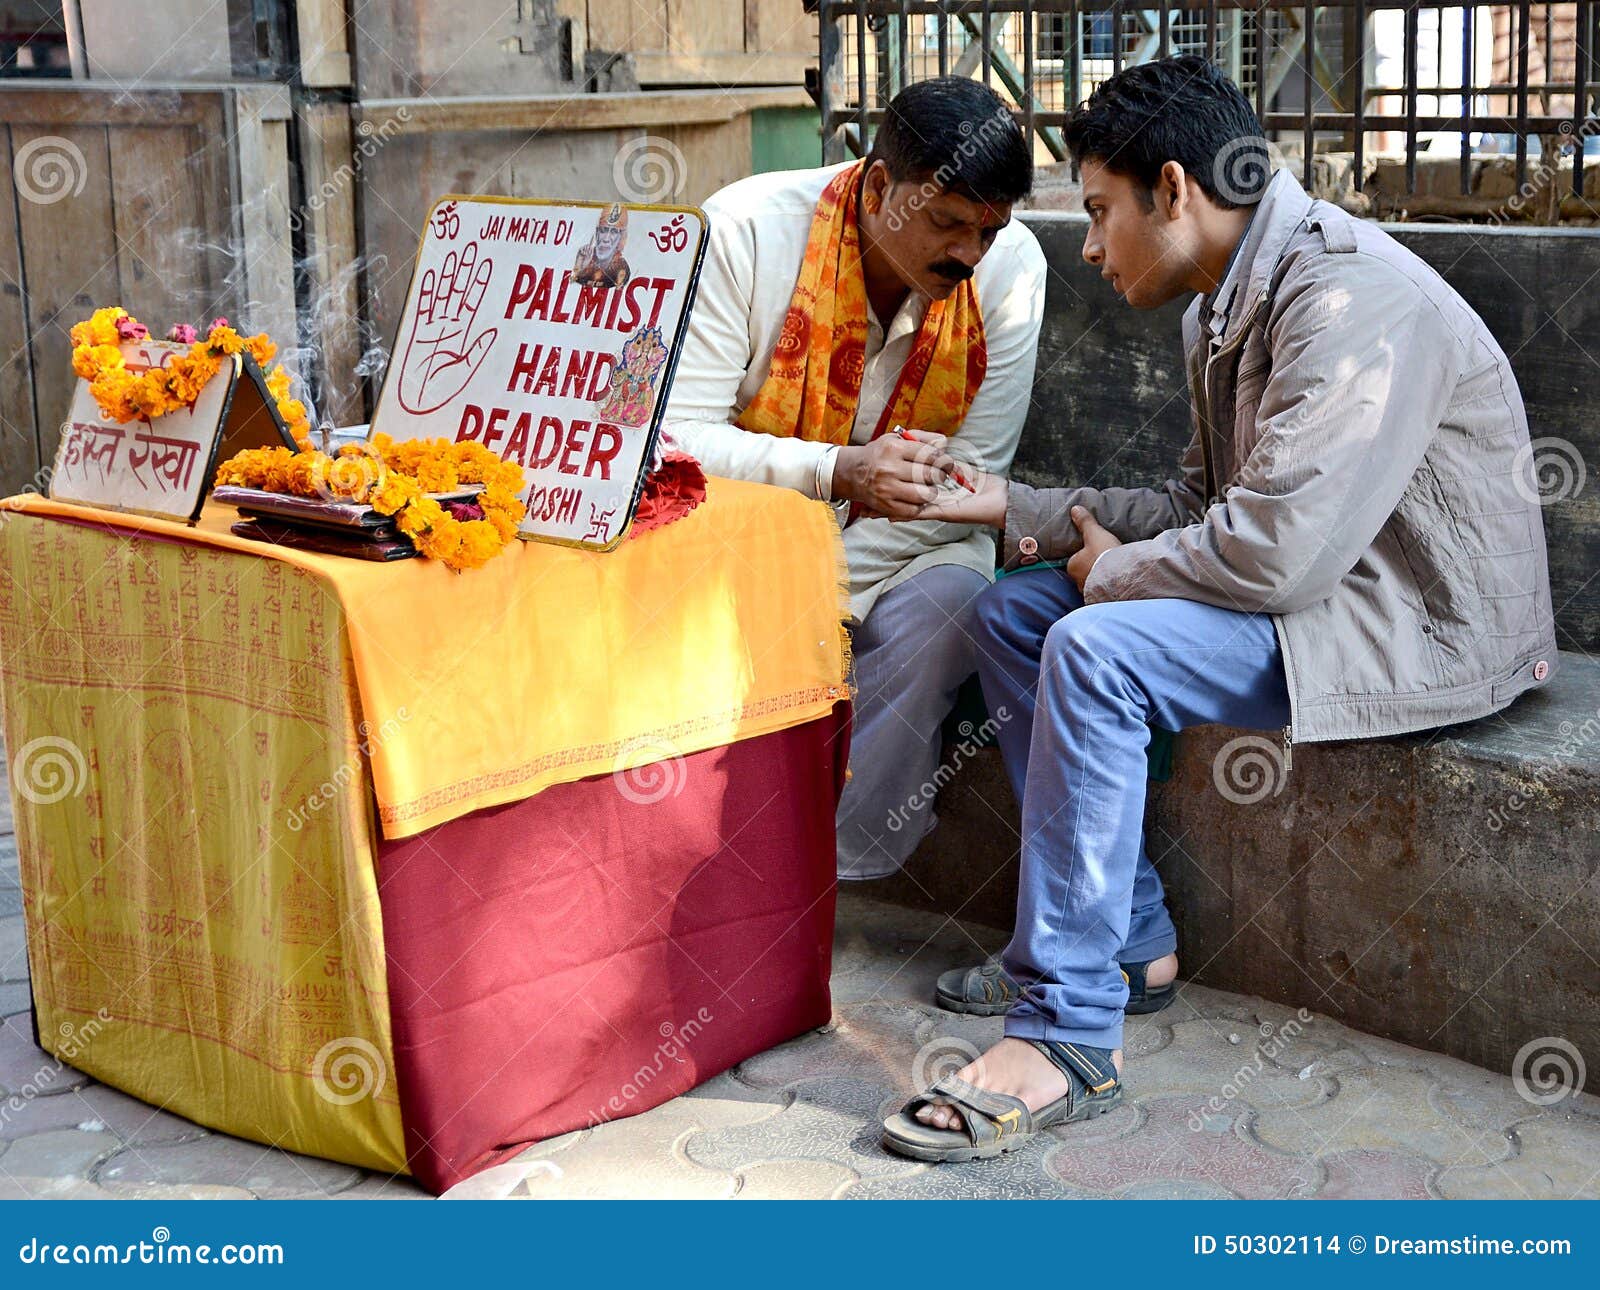 fortune-teller-street-delhi-india-50302114.jpg